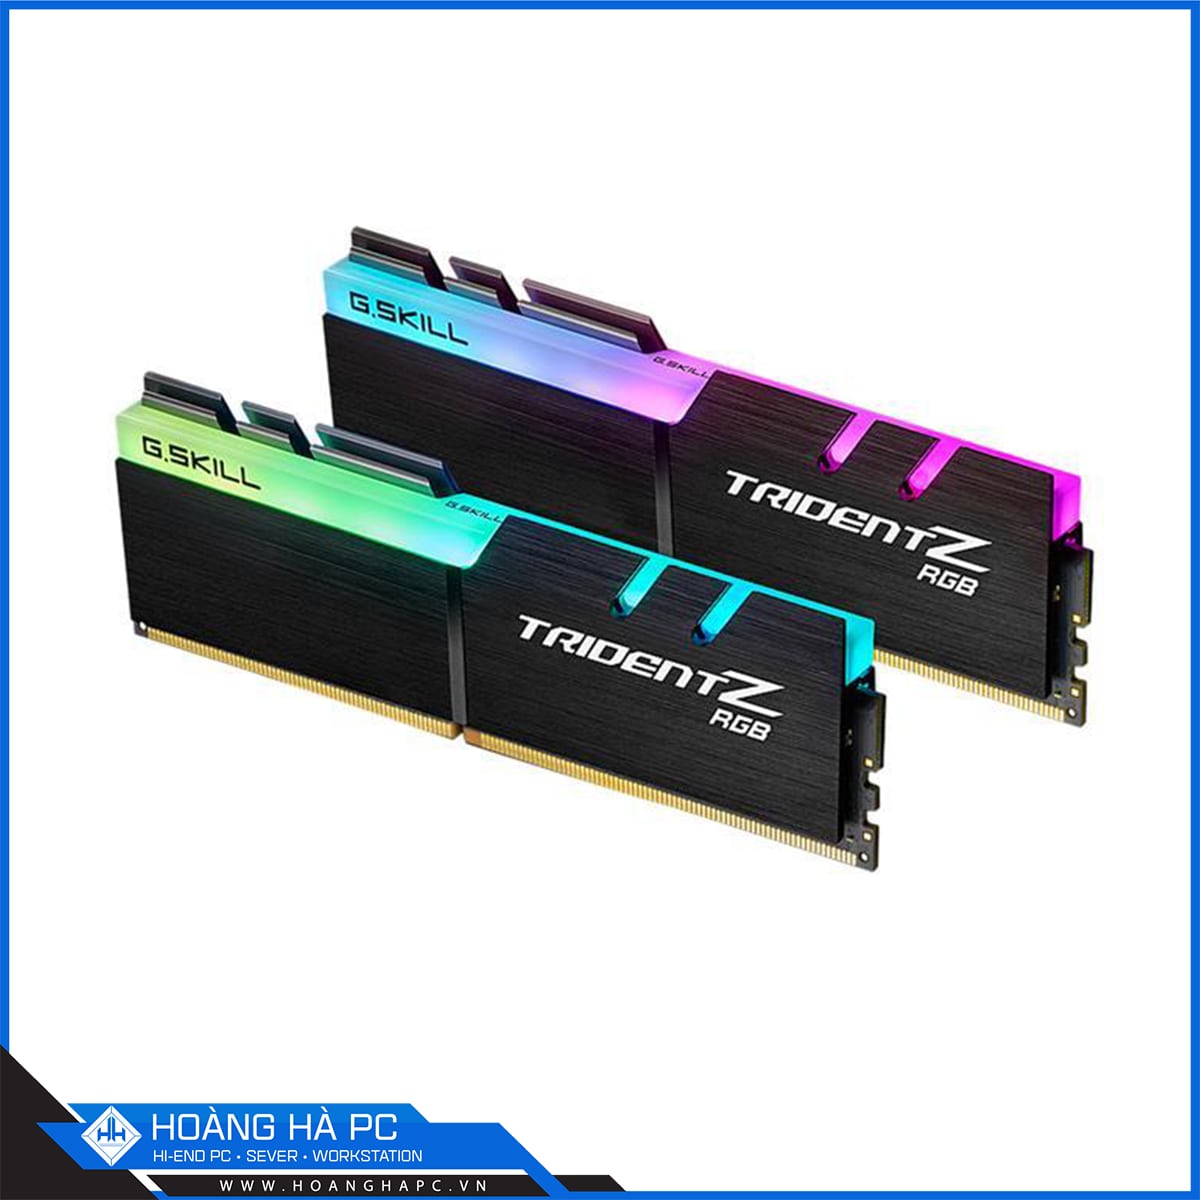 RAM GSkill TRIDENT Z RGB 16GB (2x8GB) DDR4 3200MHz (F4-3200C16D-16GTZR)